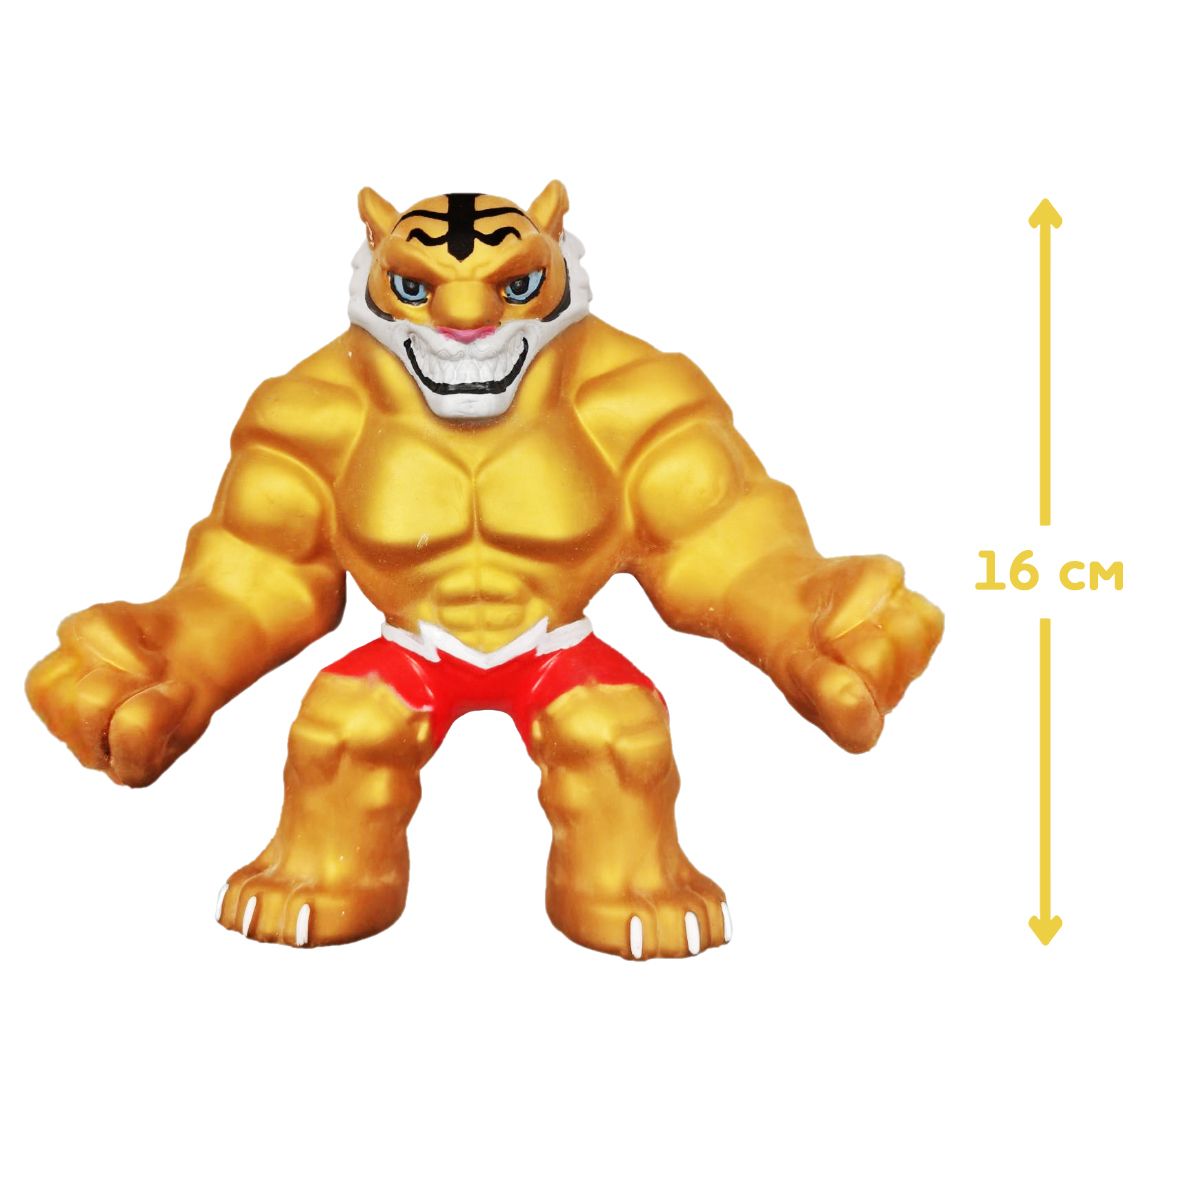 Стретч-іграшка Elastikorps серії "Fighter" – Золотий Тигр